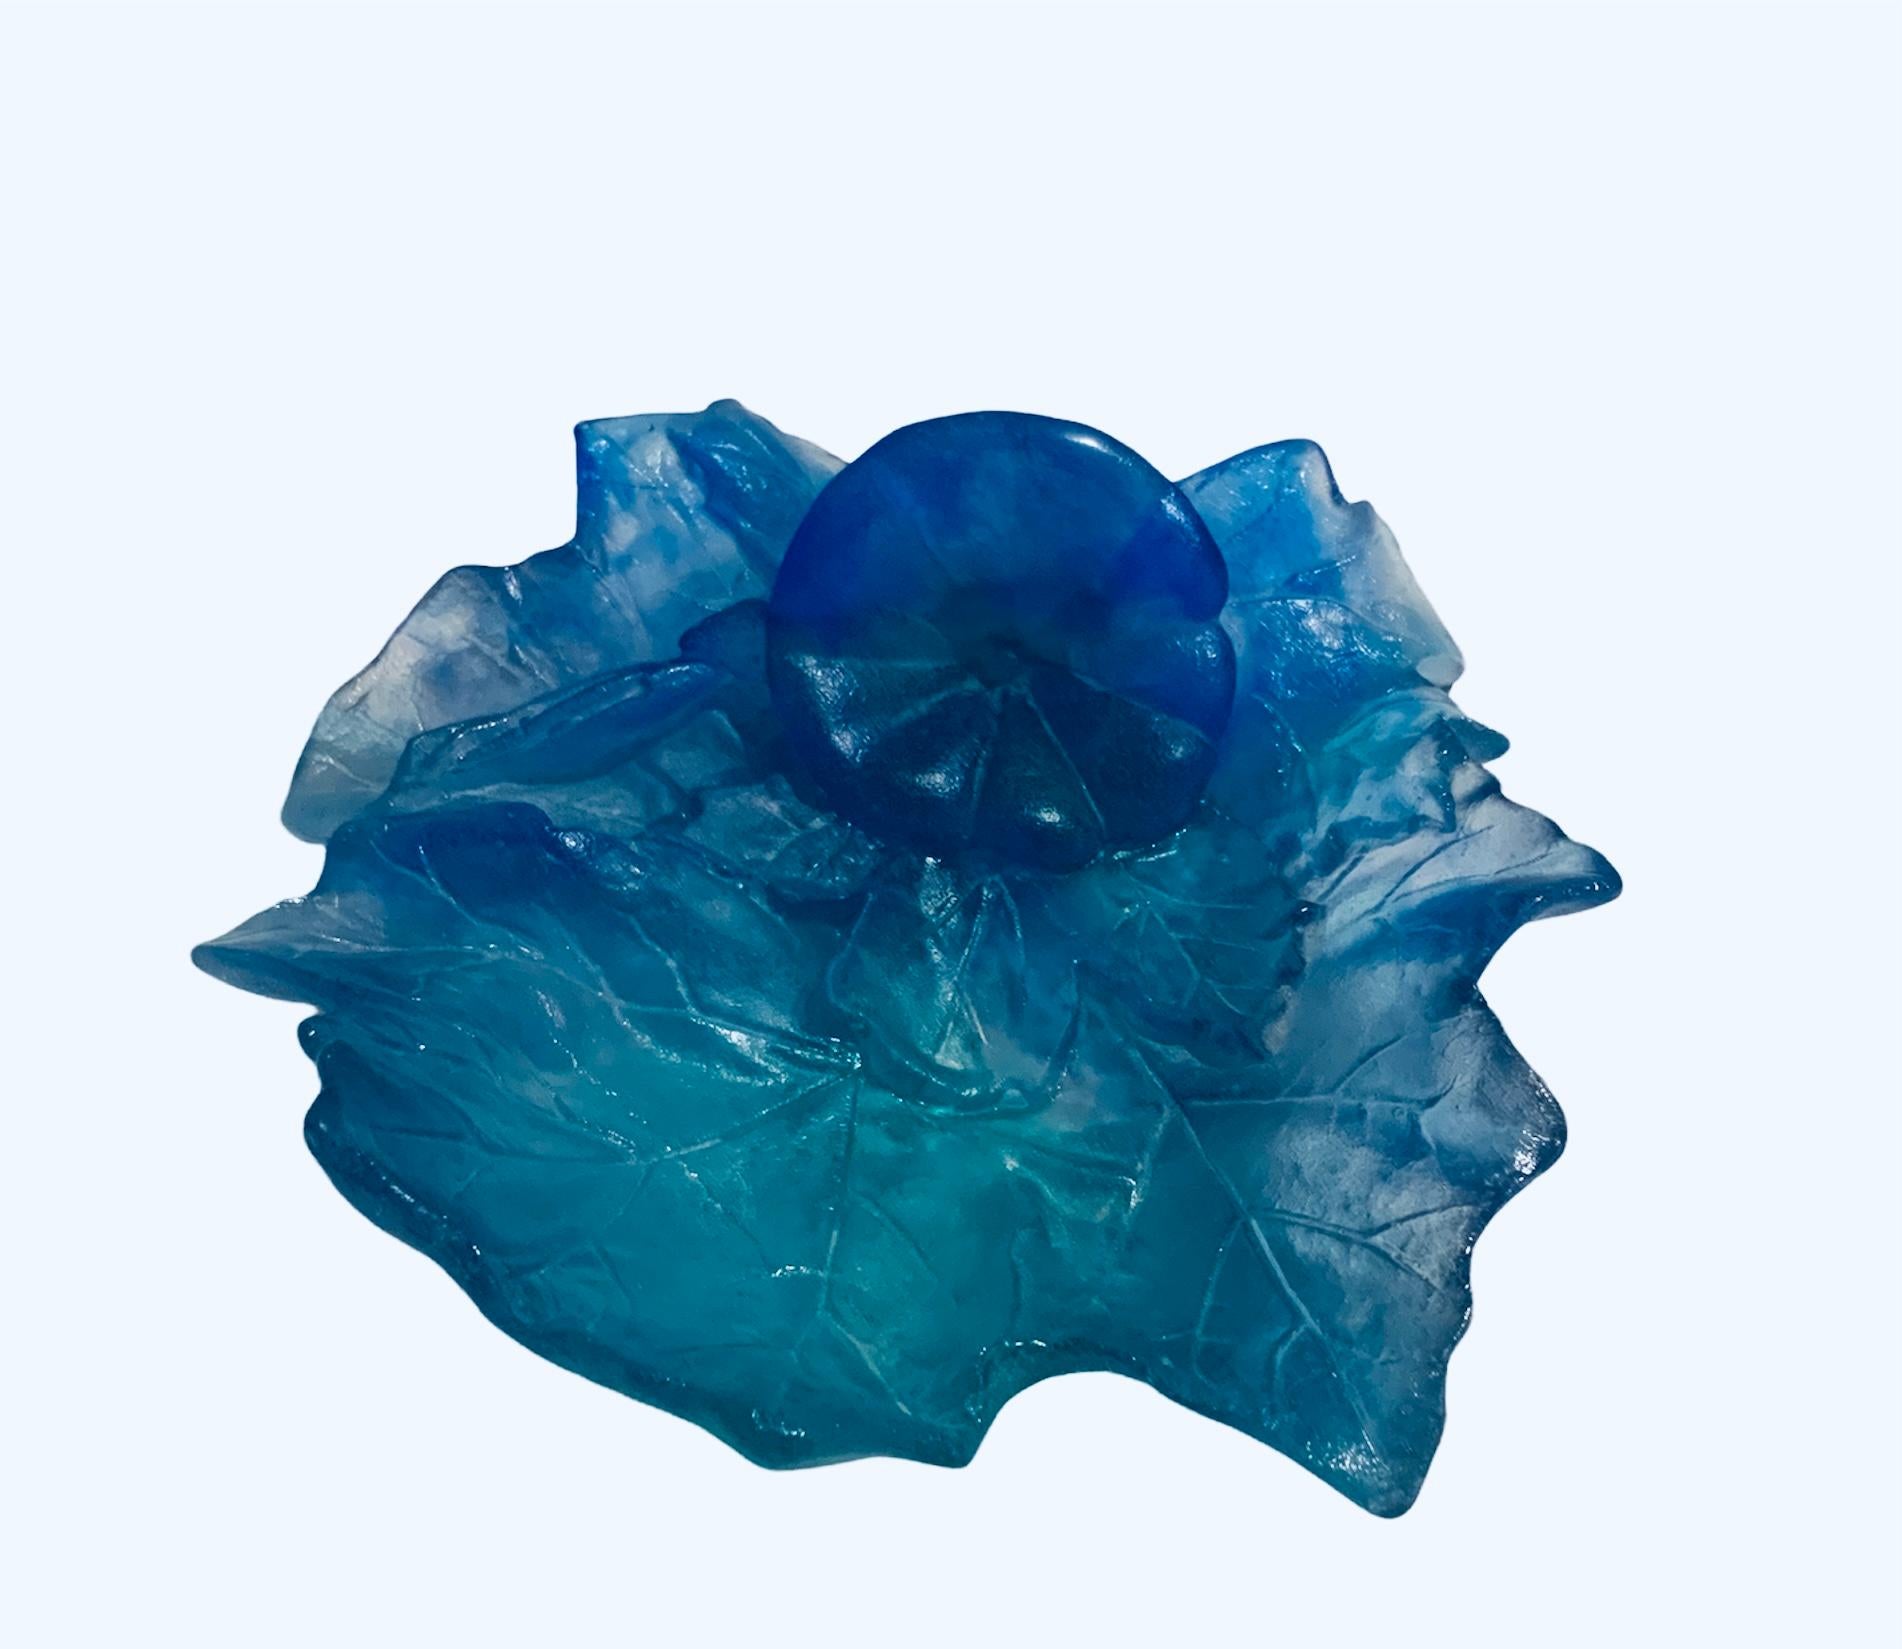 Dies ist eine Daum Kristall Pate de Verre einzelne Blume (es kann eine Groundsel sein) und große Blätter Schale, die verschiedene Schattierungen von Blau und Türkis Farbe darstellen.